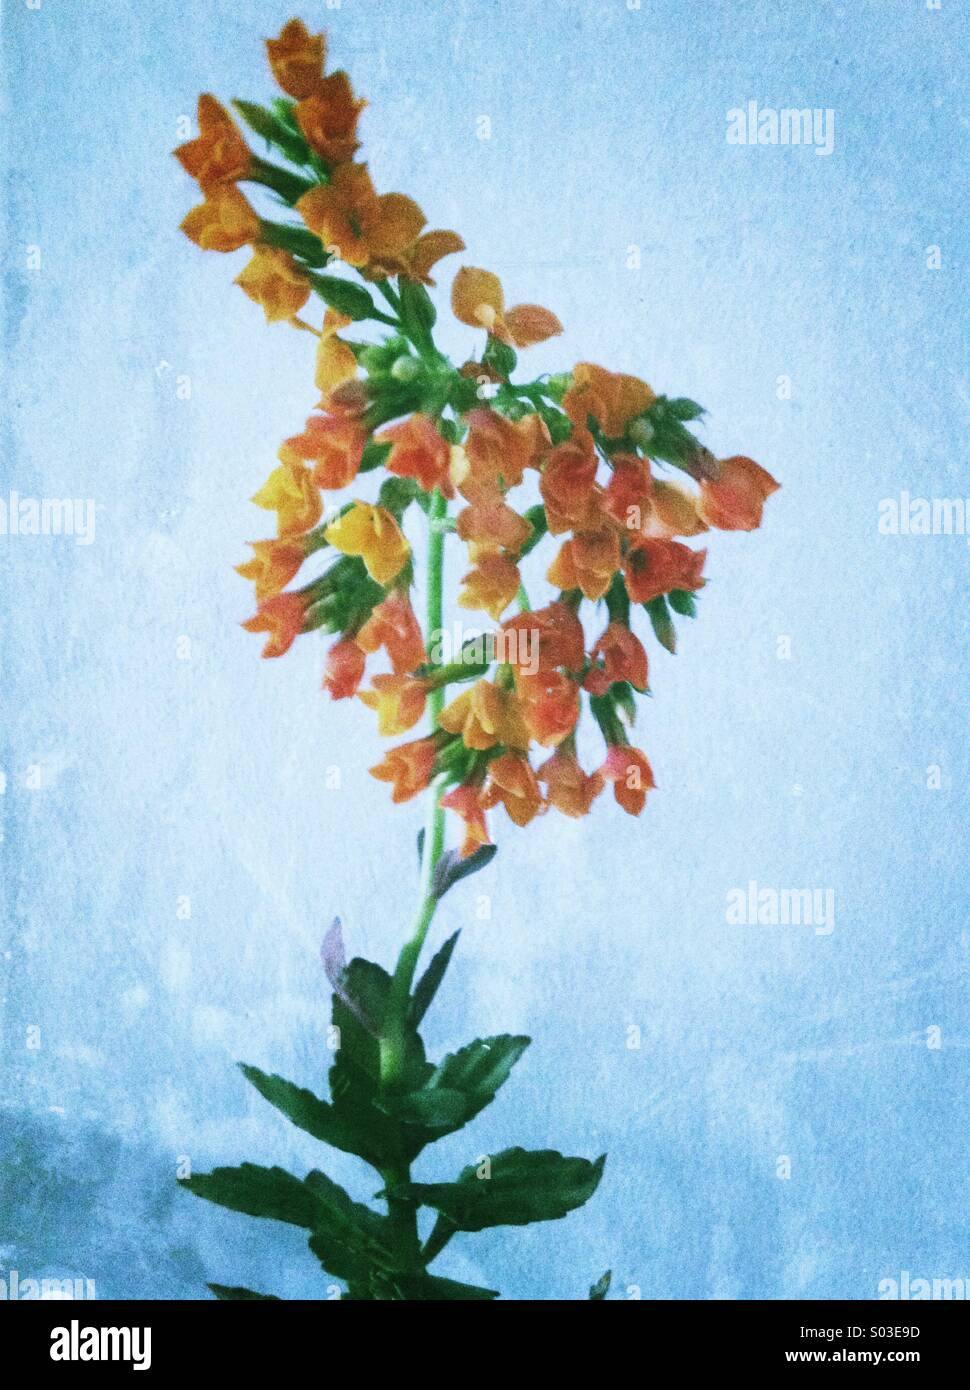 Orange flowering plant Stock Photo